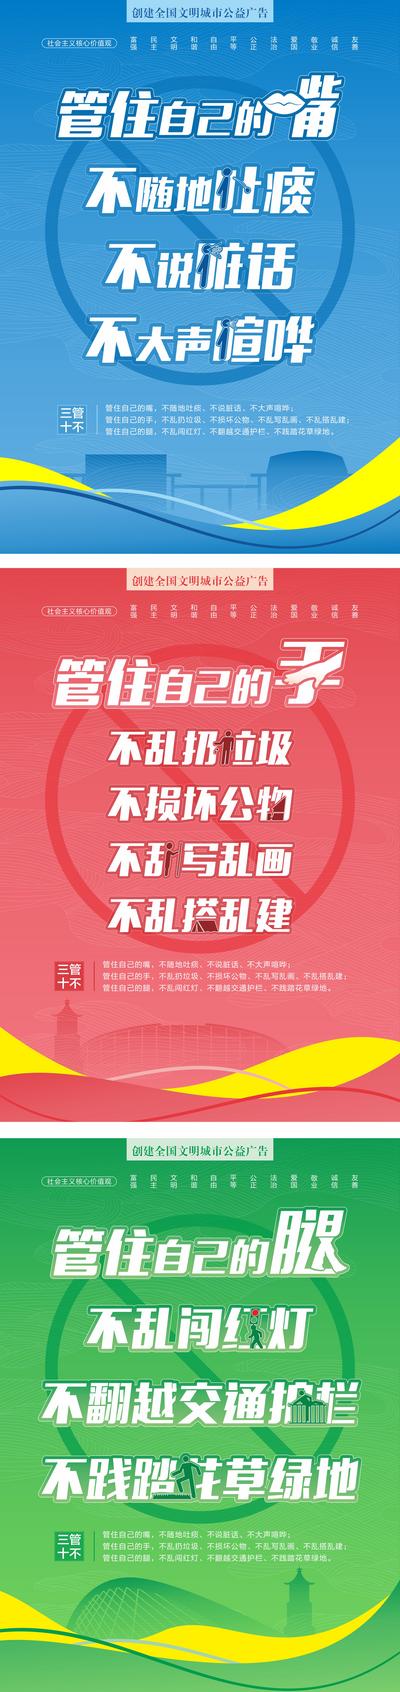 南门网 海报 展板 公益广告 文明城市 核心价值观 系列